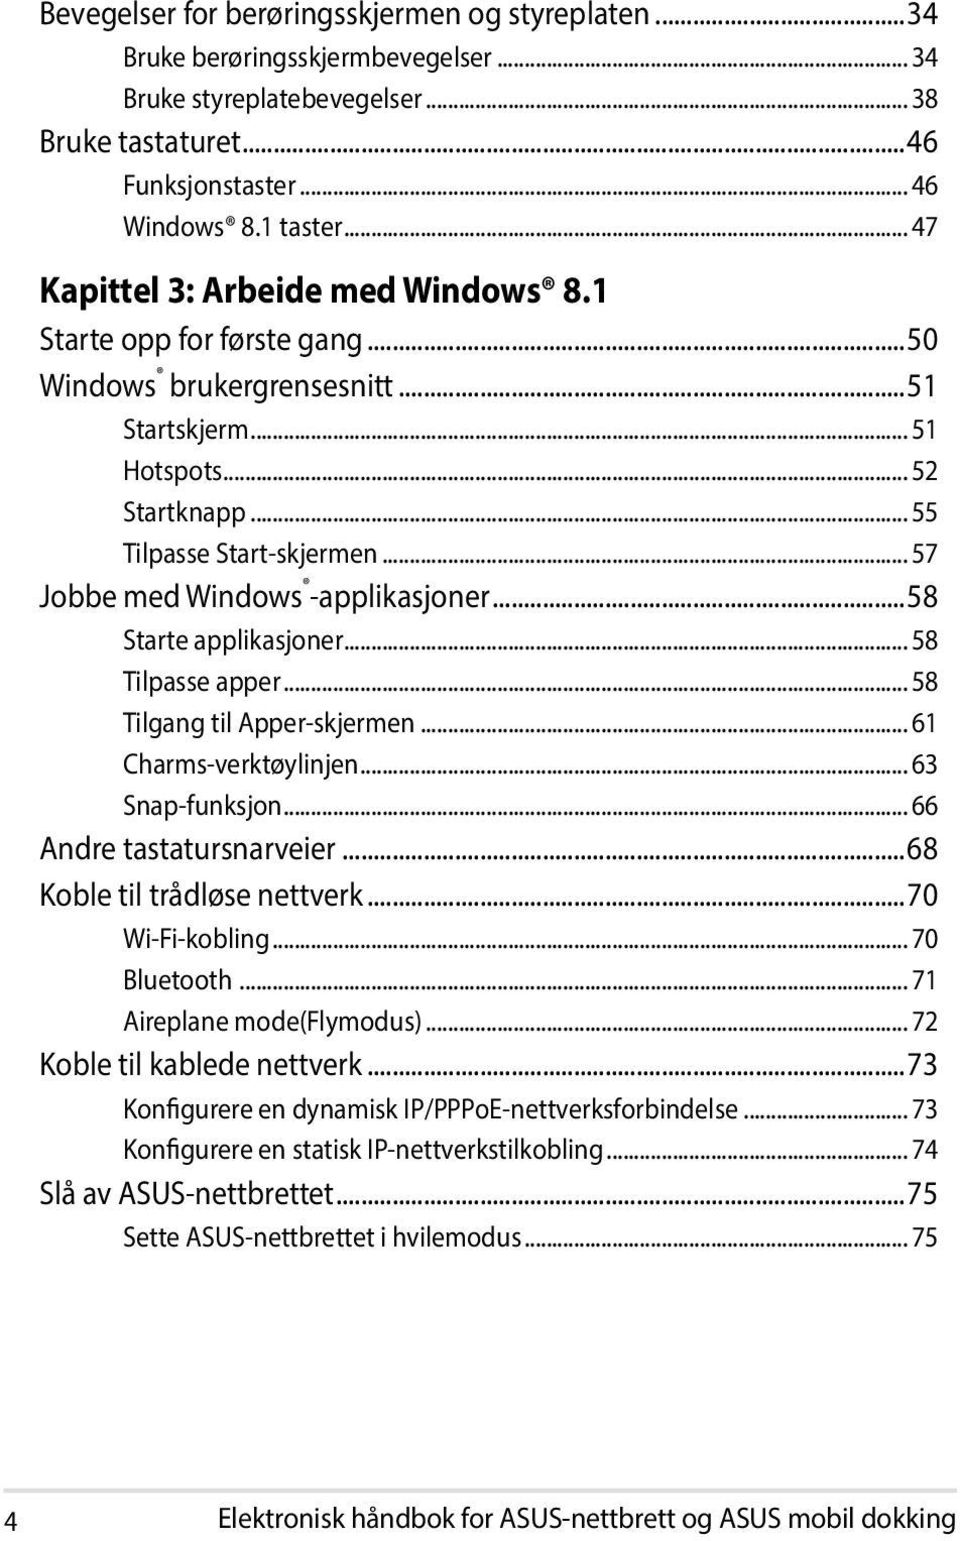 .. 57 Jobbe med Windows -applikasjoner...58 Starte applikasjoner... 58 Tilpasse apper... 58 Tilgang til Apper-skjermen... 61 Charms-verktøylinjen... 63 Snap-funksjon... 66 Andre tastatursnarveier.